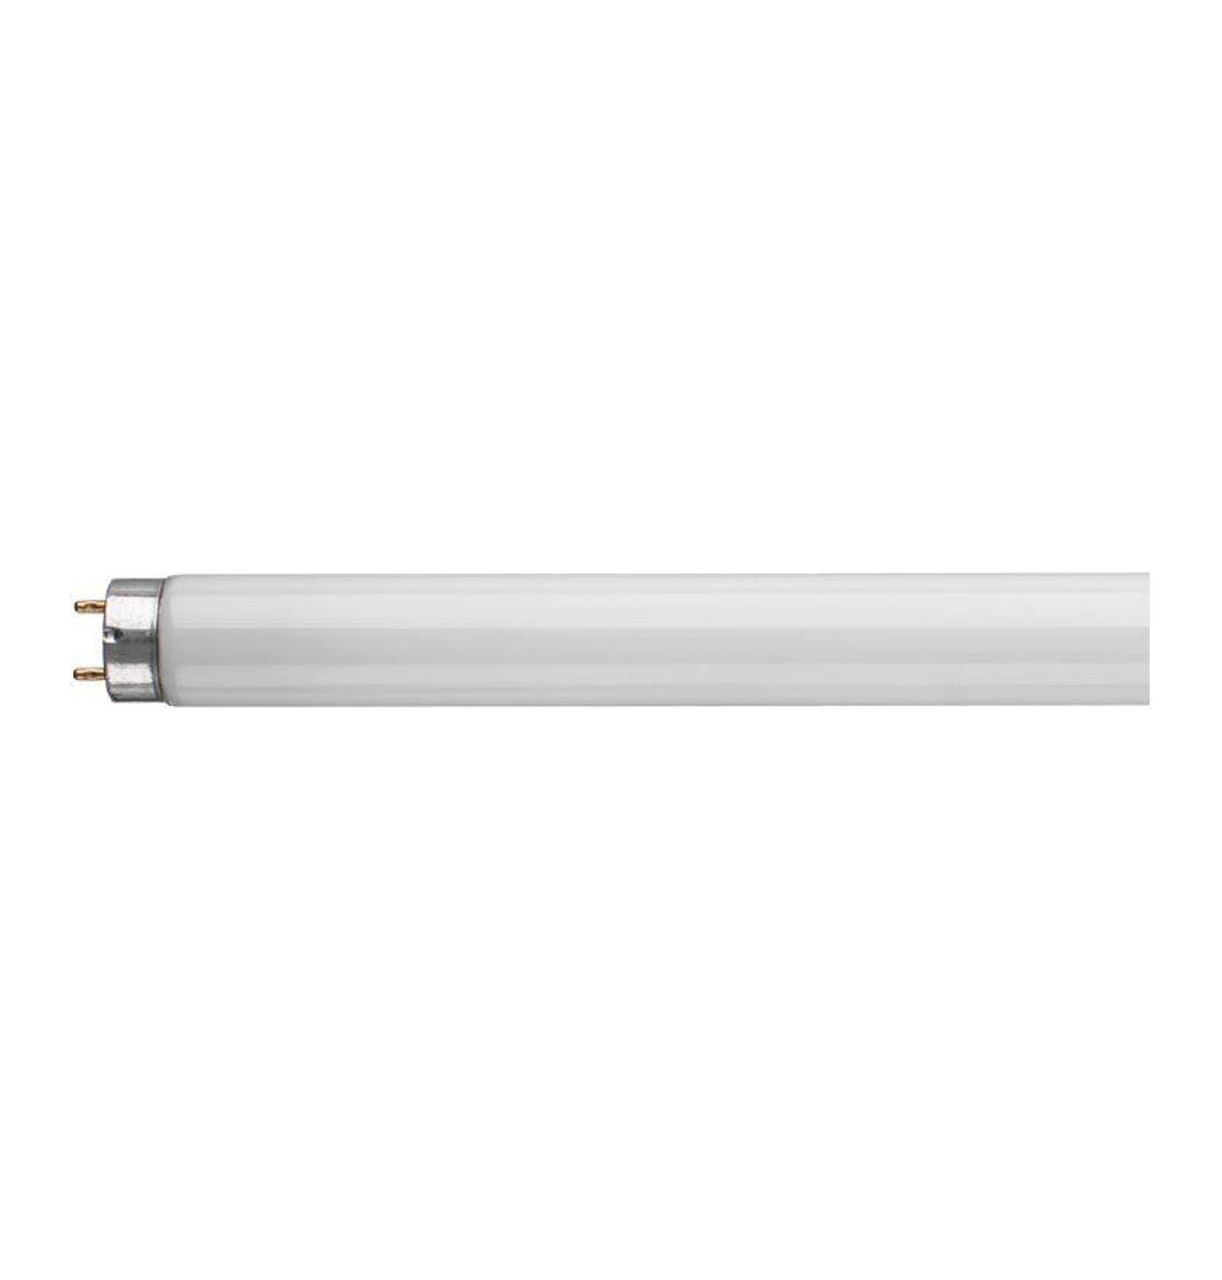 Shatterproof Fluorescent Tube 18" 15w T8 Standard White 835 3500K Coversafe 